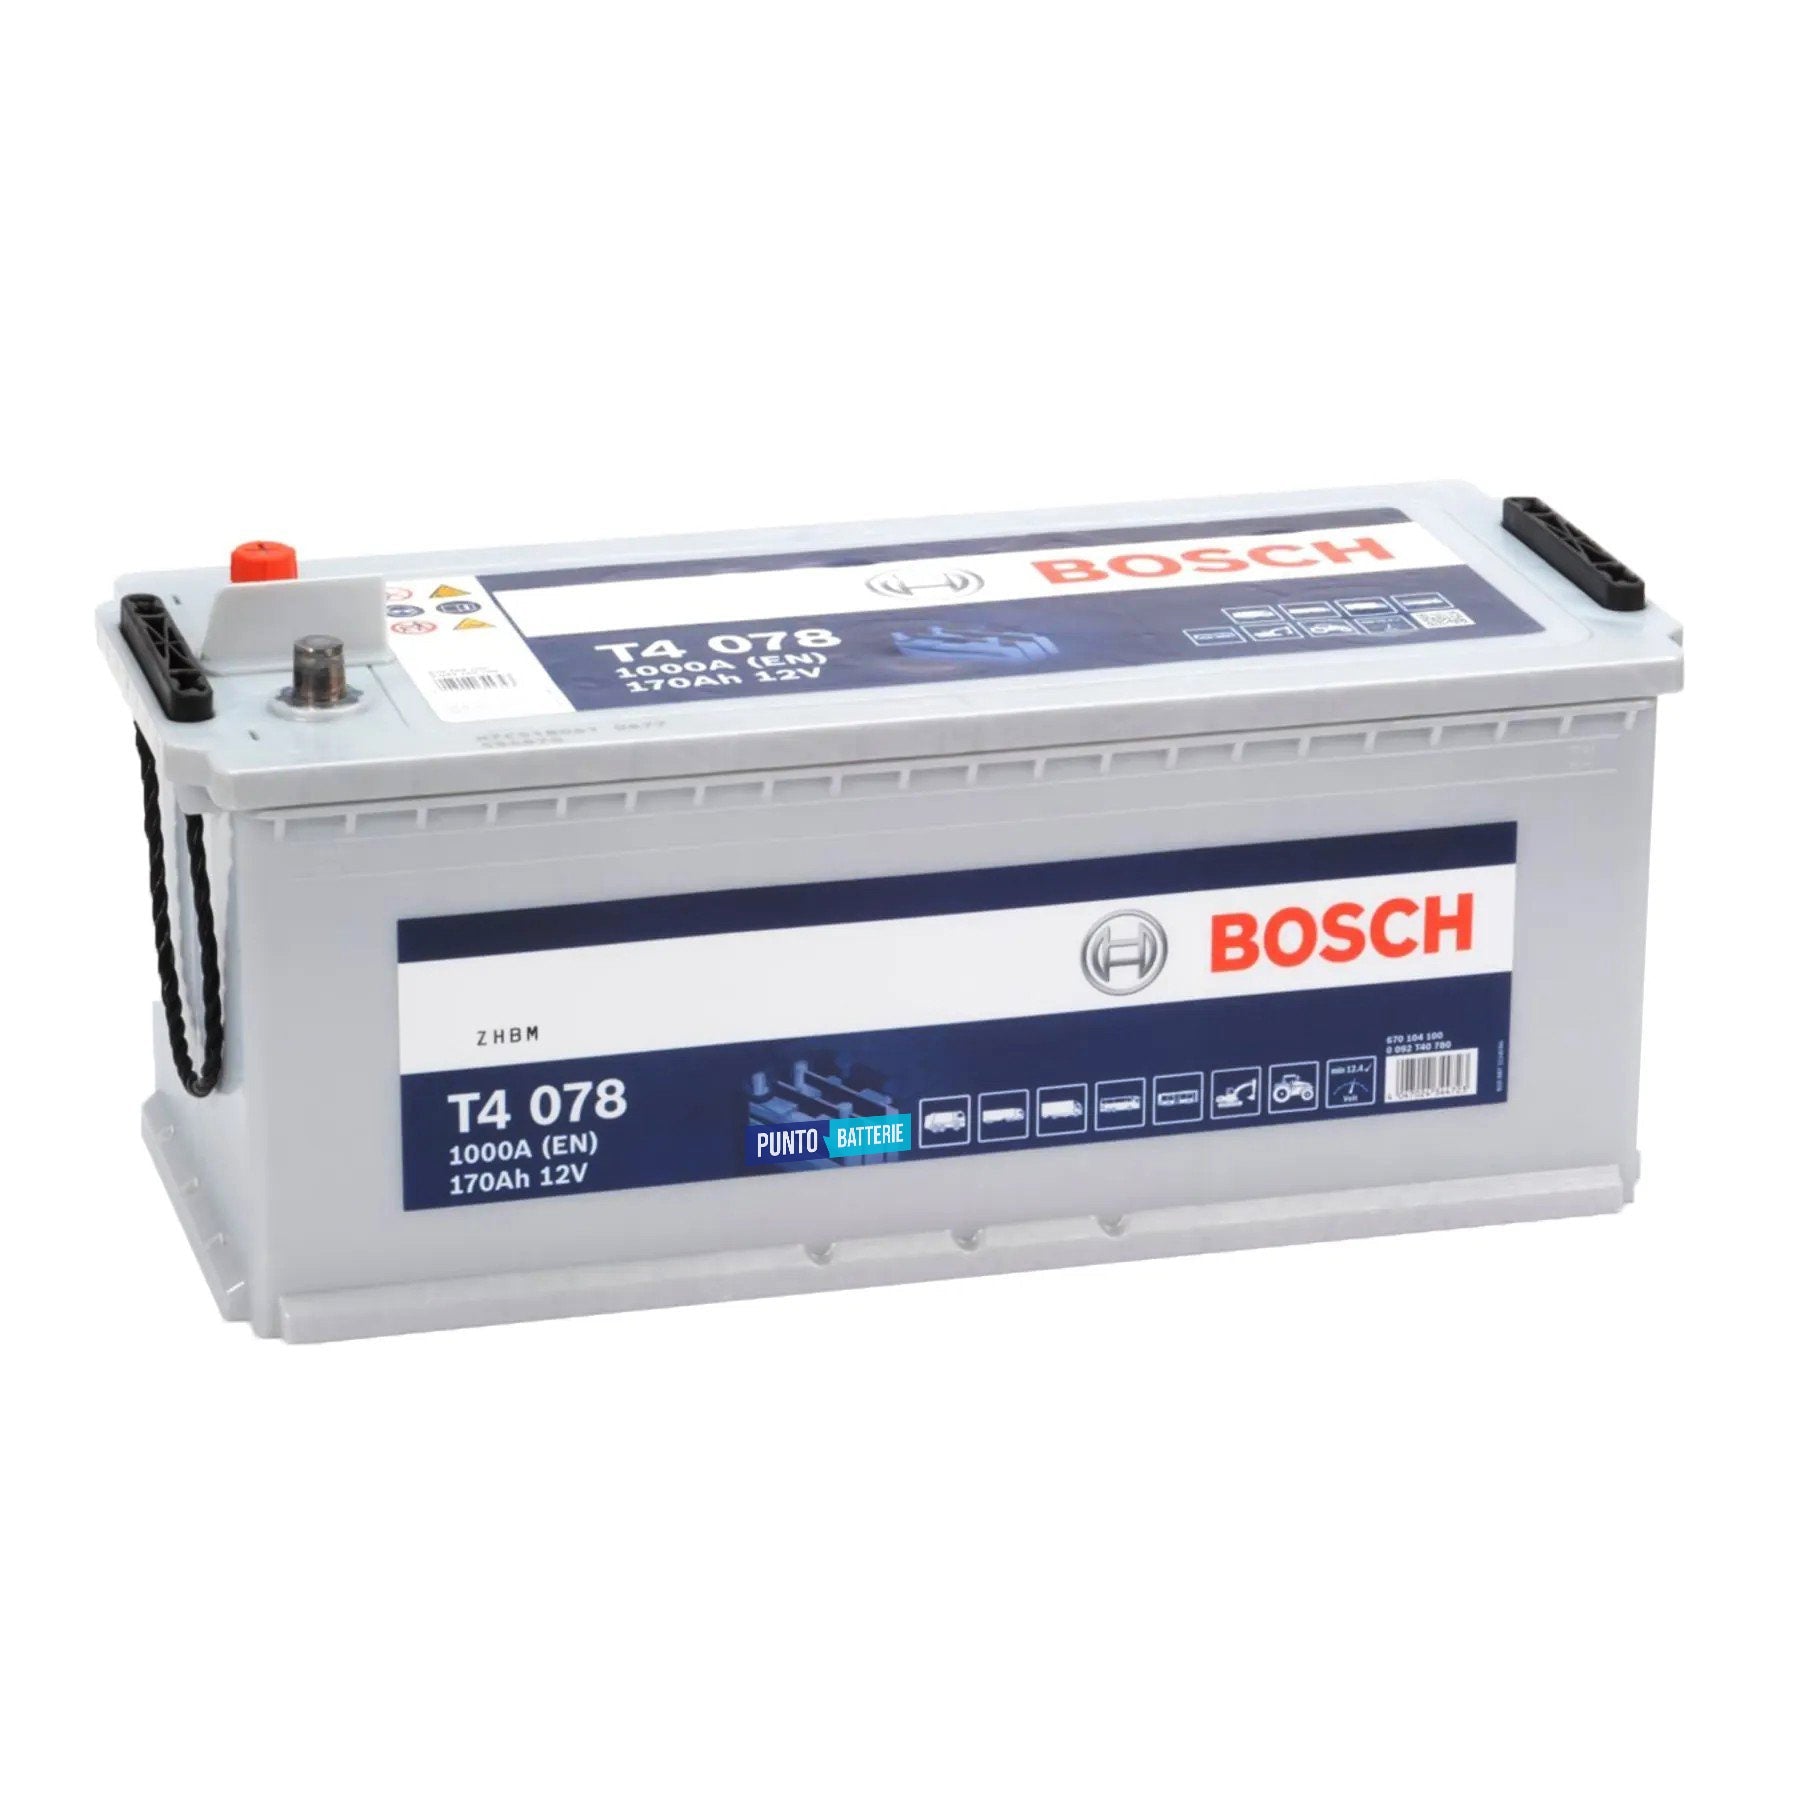 Batteria originale Bosch T4 T5078, dimensioni 513 x 223 x 223, polo positivo a sinistra, 12 volt, 170 amperora, 1000 ampere. Batteria per camion e veicoli pesanti.